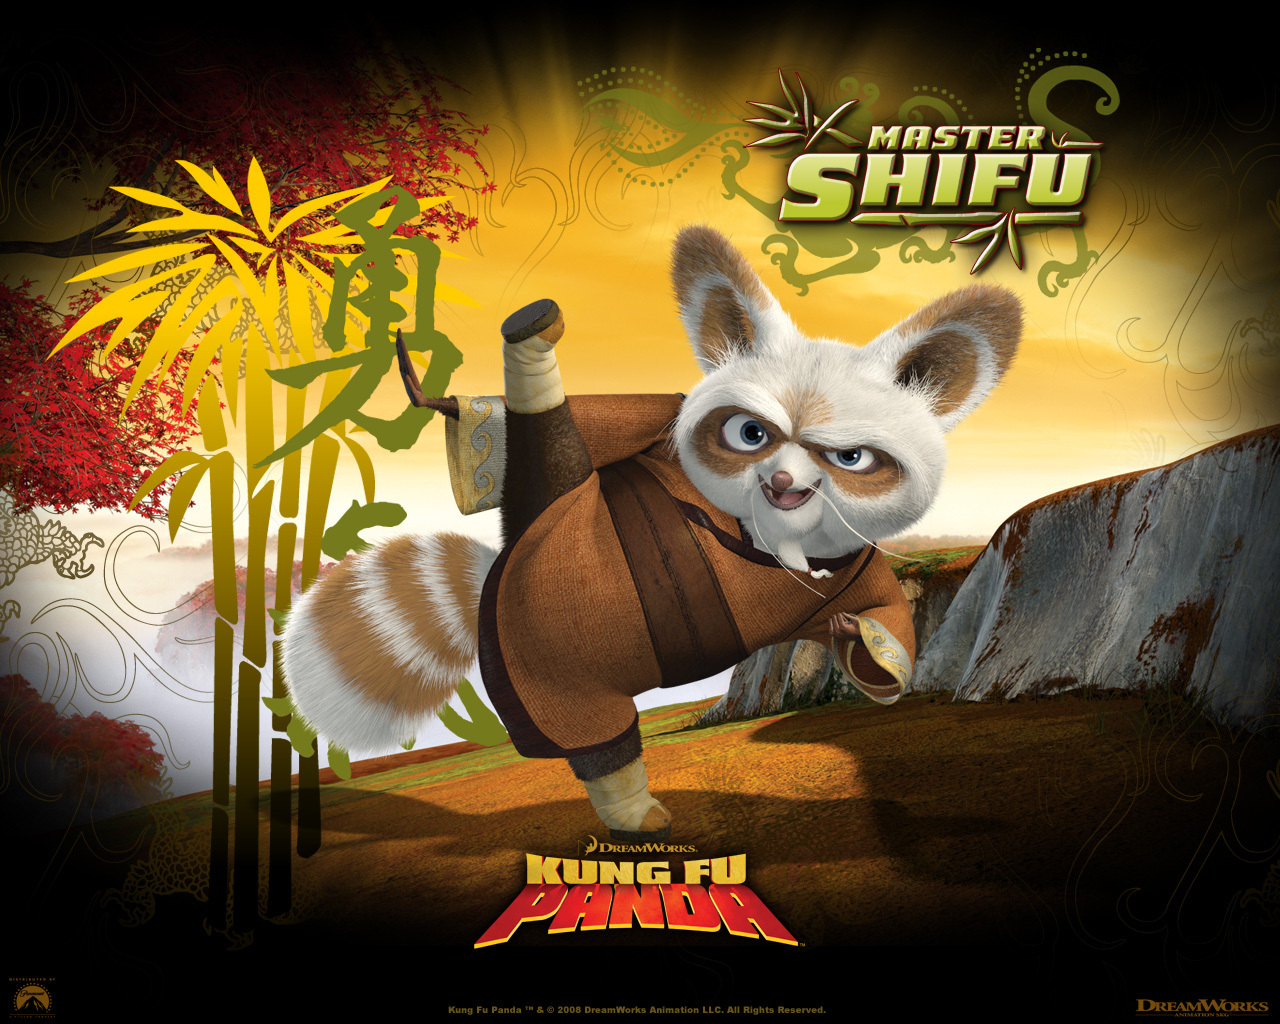 sifu or shifu